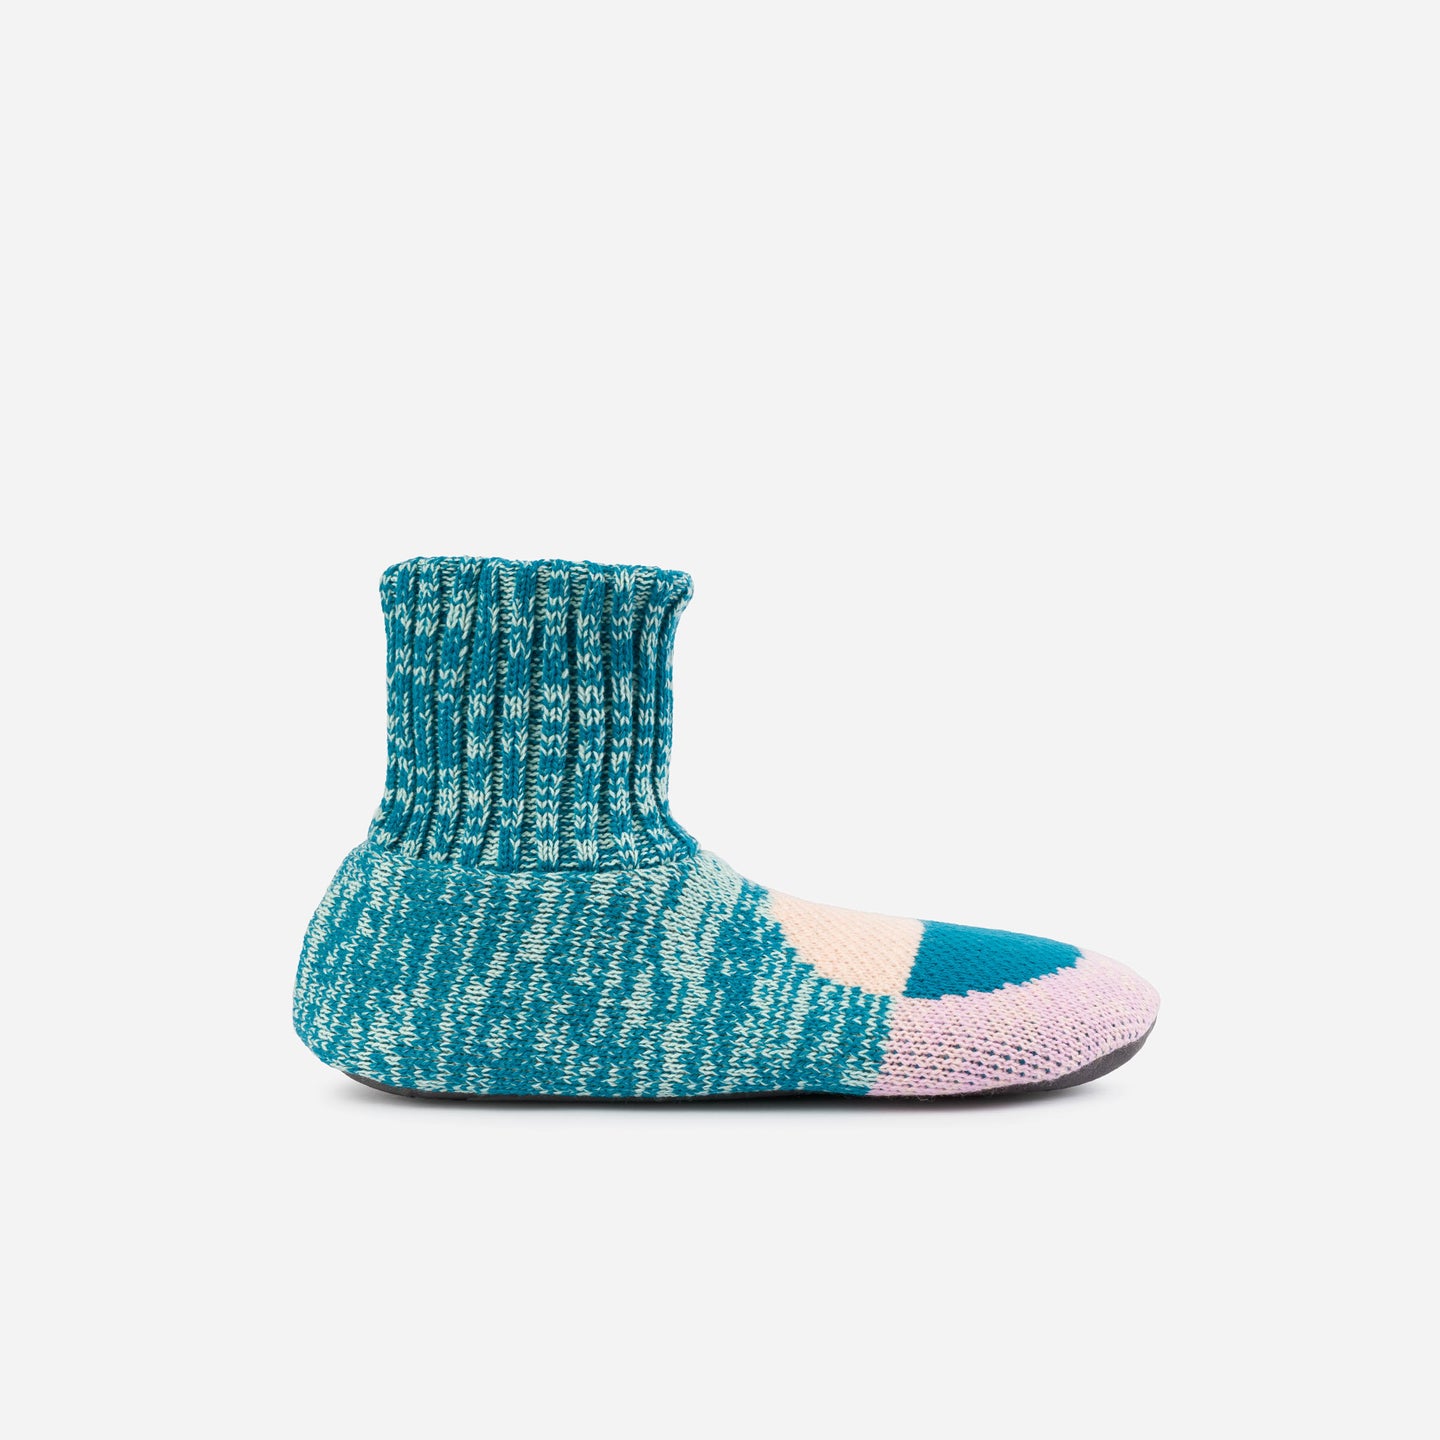 Flip Dot Knit Sock Slippers Retro Soft Padded Socks Unisex Men's Extended SizesKnitted